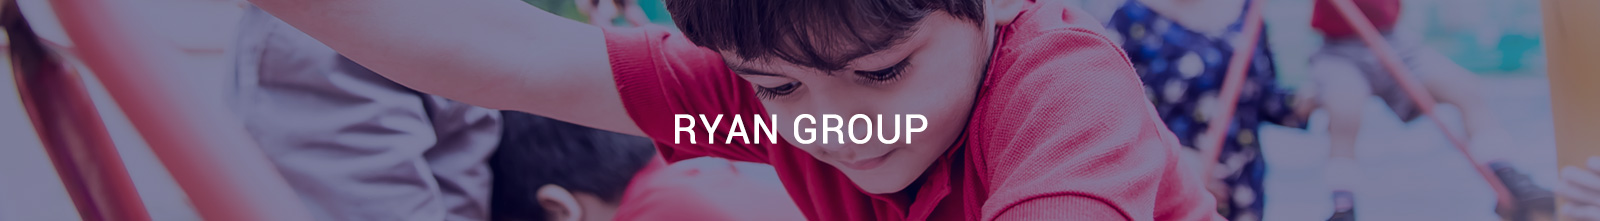 Ryan Group - Ryan Global Schools